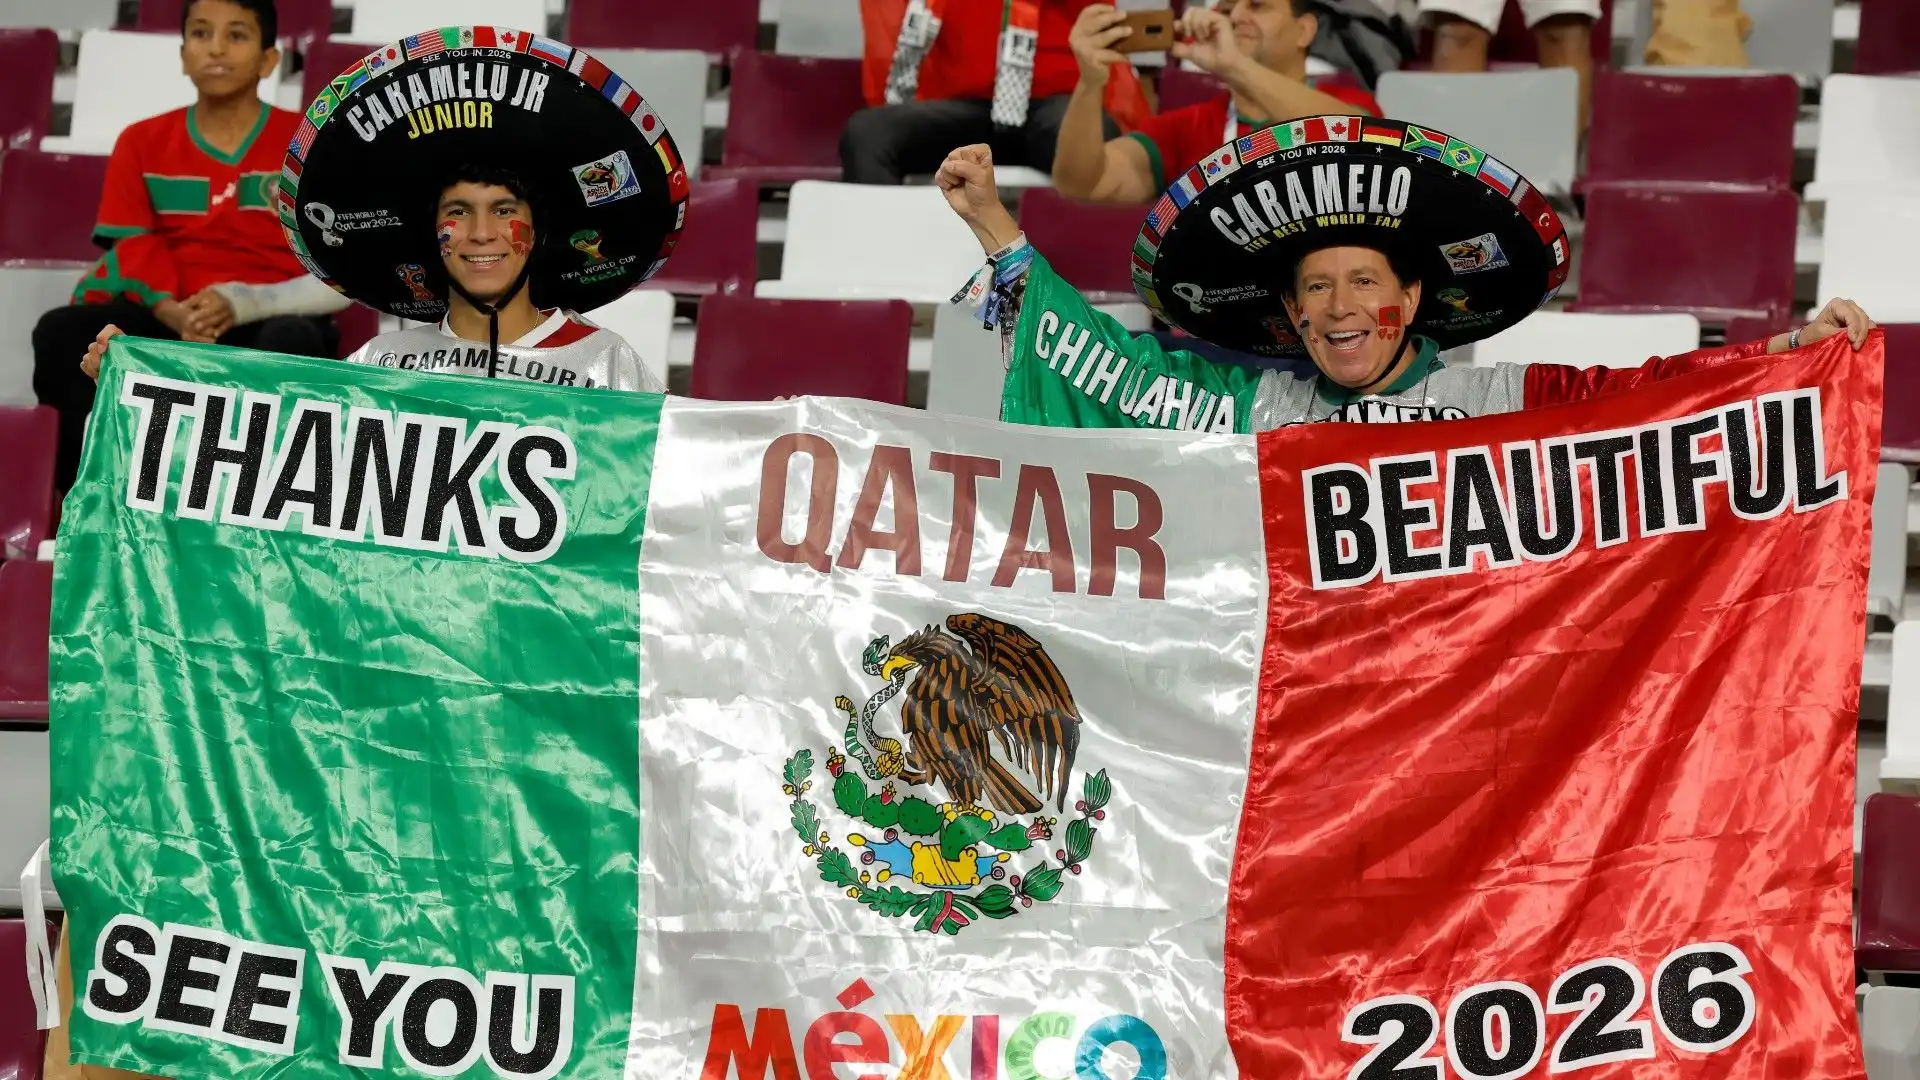 Un bellissimo messaggio da due tifosi messicani